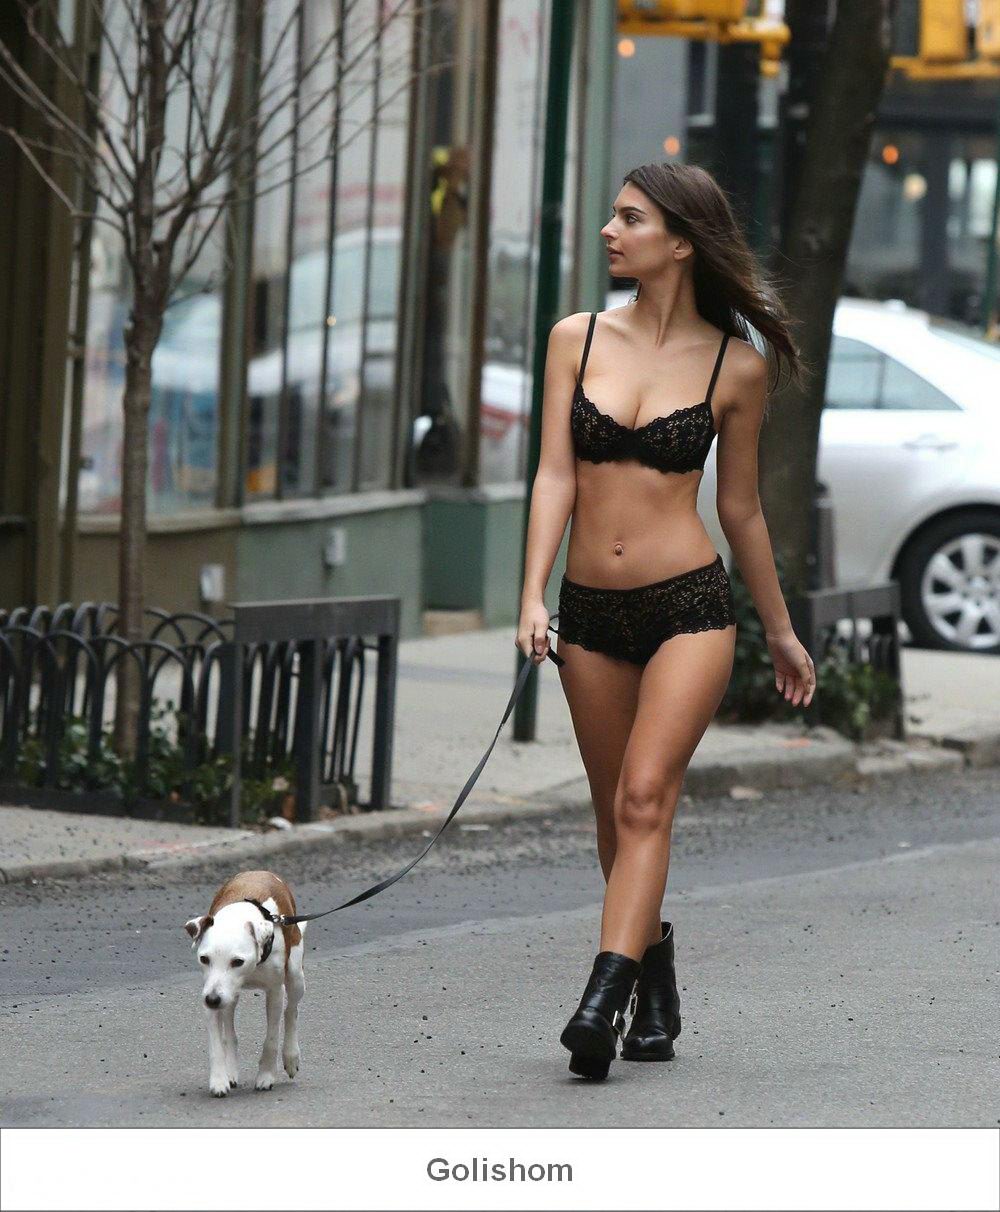 Модель Эмили Ратаковски прогулялась в нижнем белье с собачкой